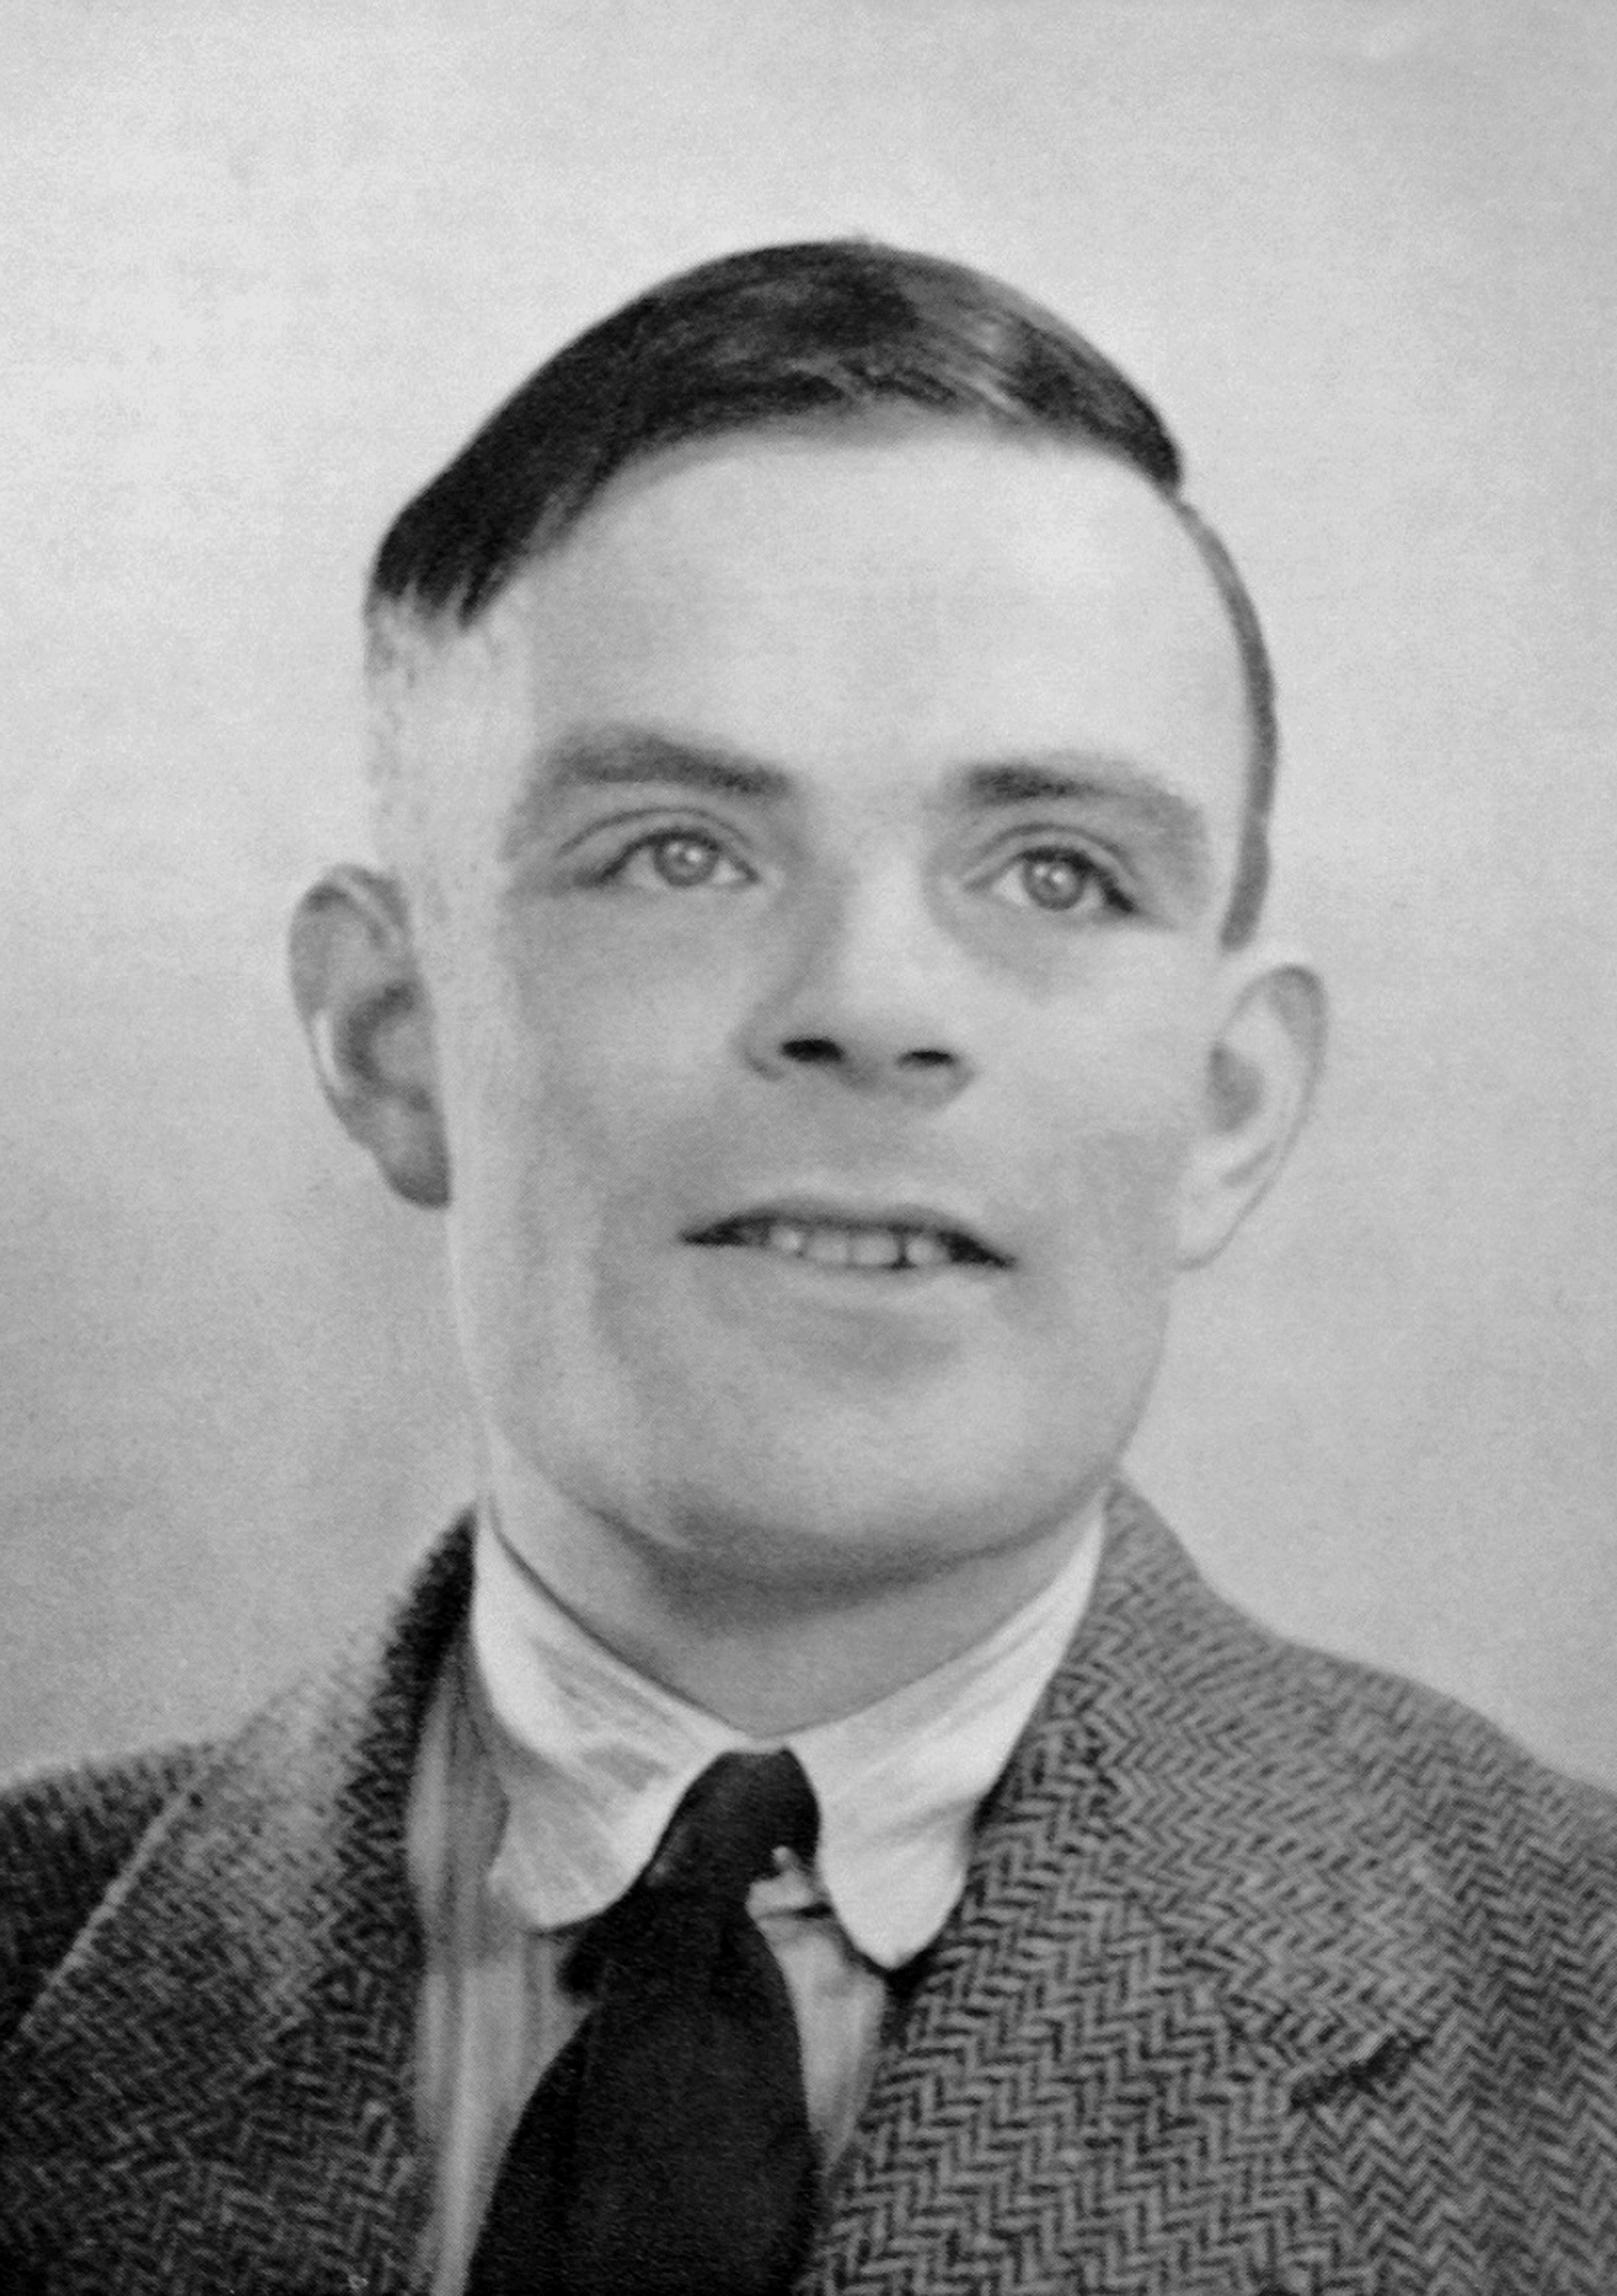 Closeup of Alan Turing